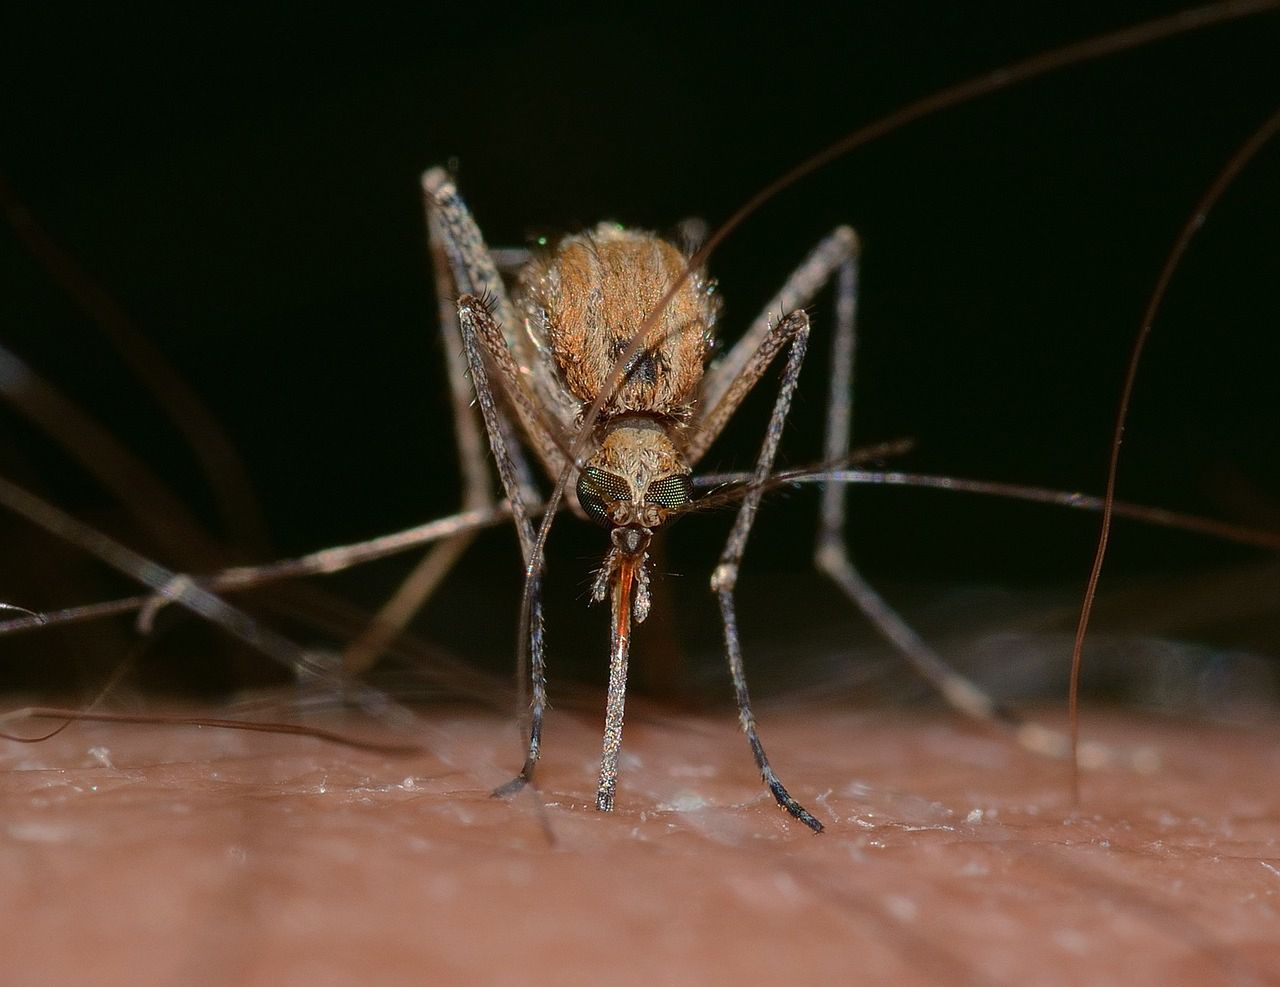 Jak zwalczać komary? Technologia kontra bzyczący intruzi